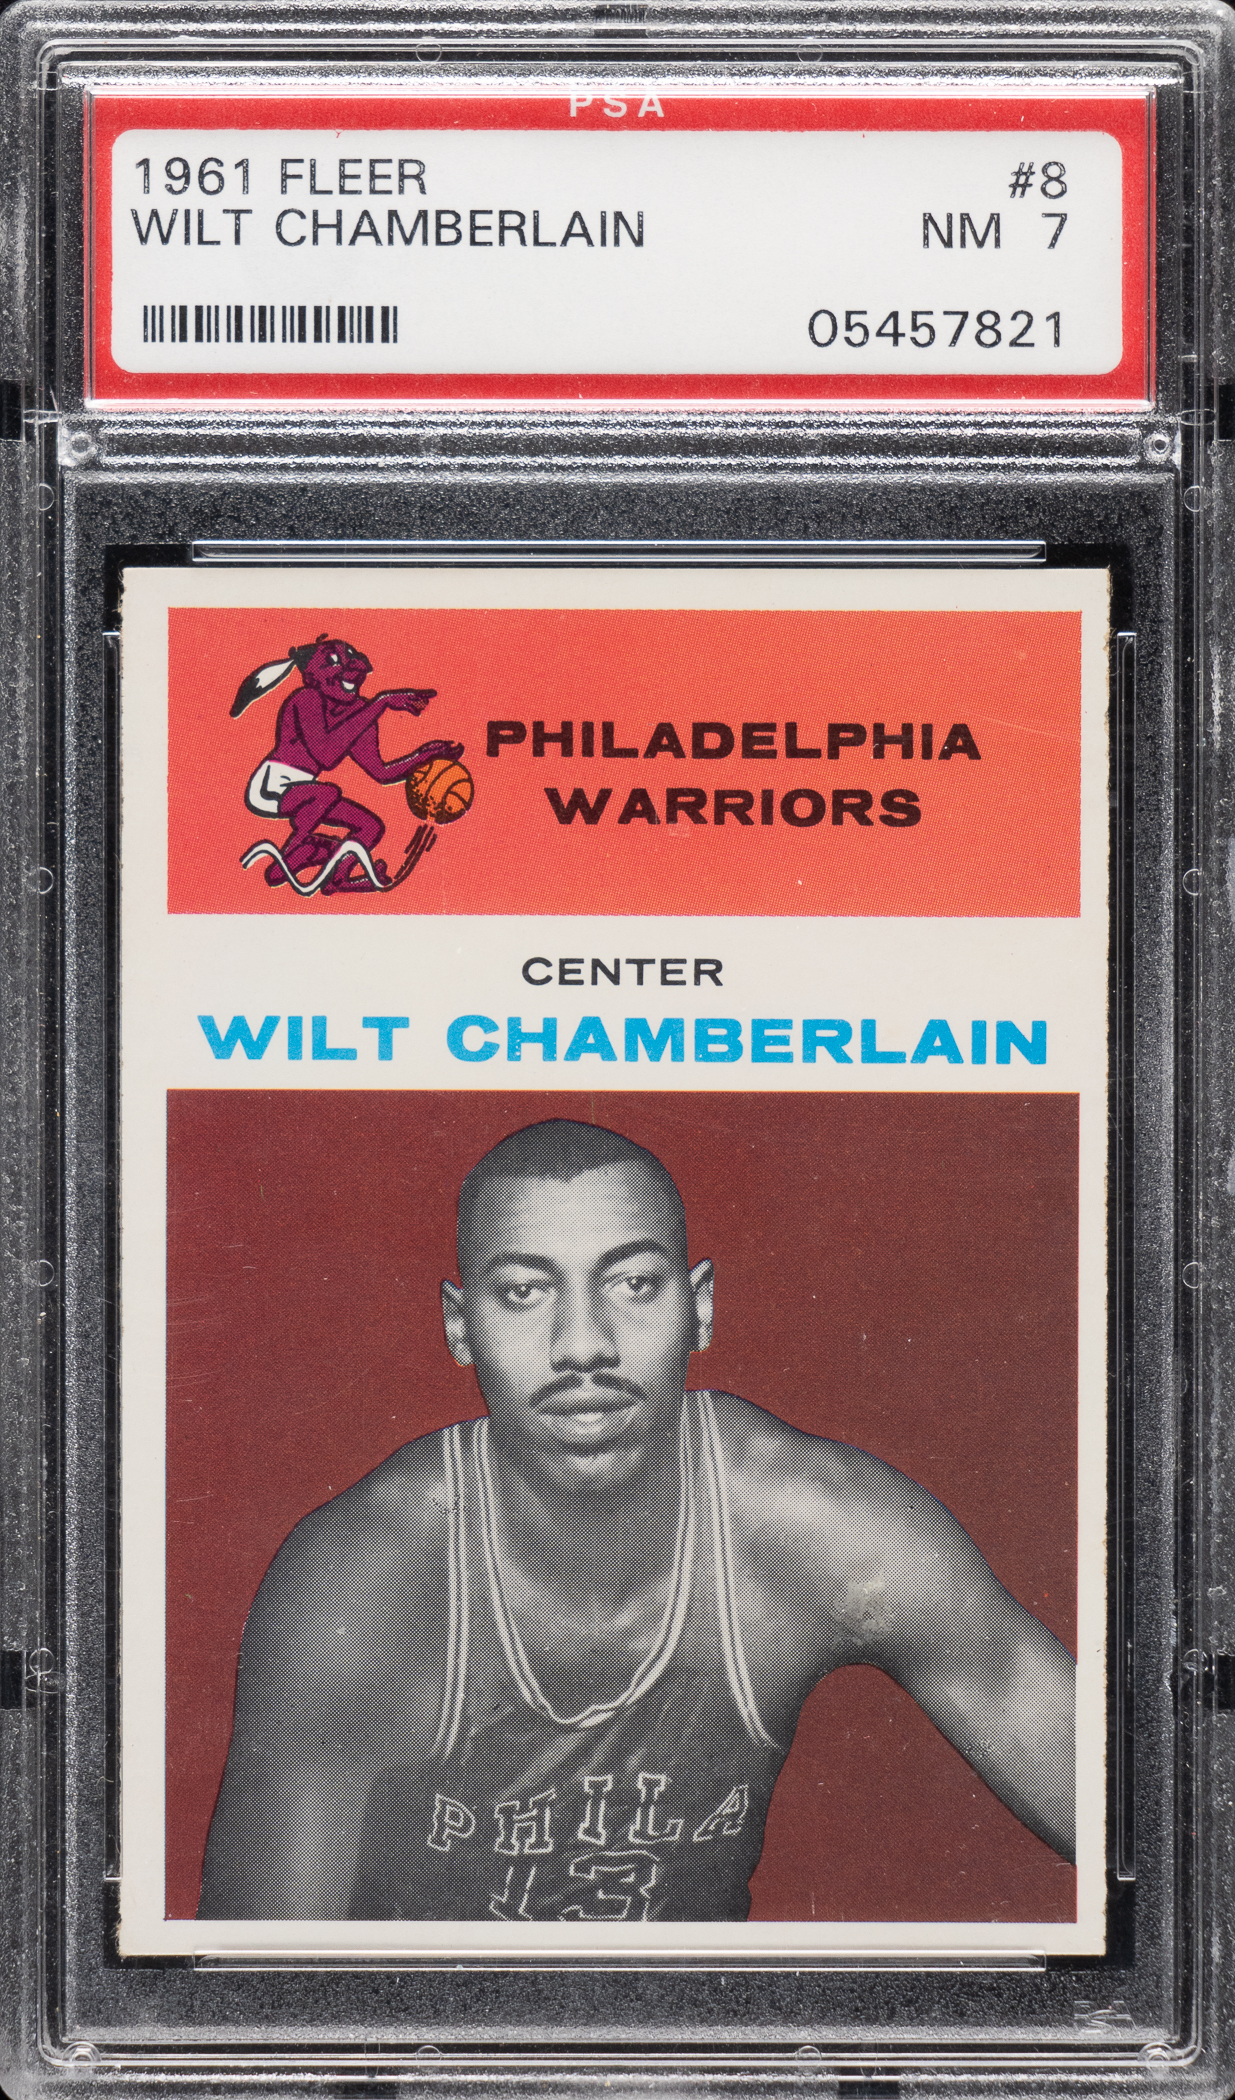 Wilt Chamberlain’s 1961 Fleer Rookie PSA NM 7 went for $12,000